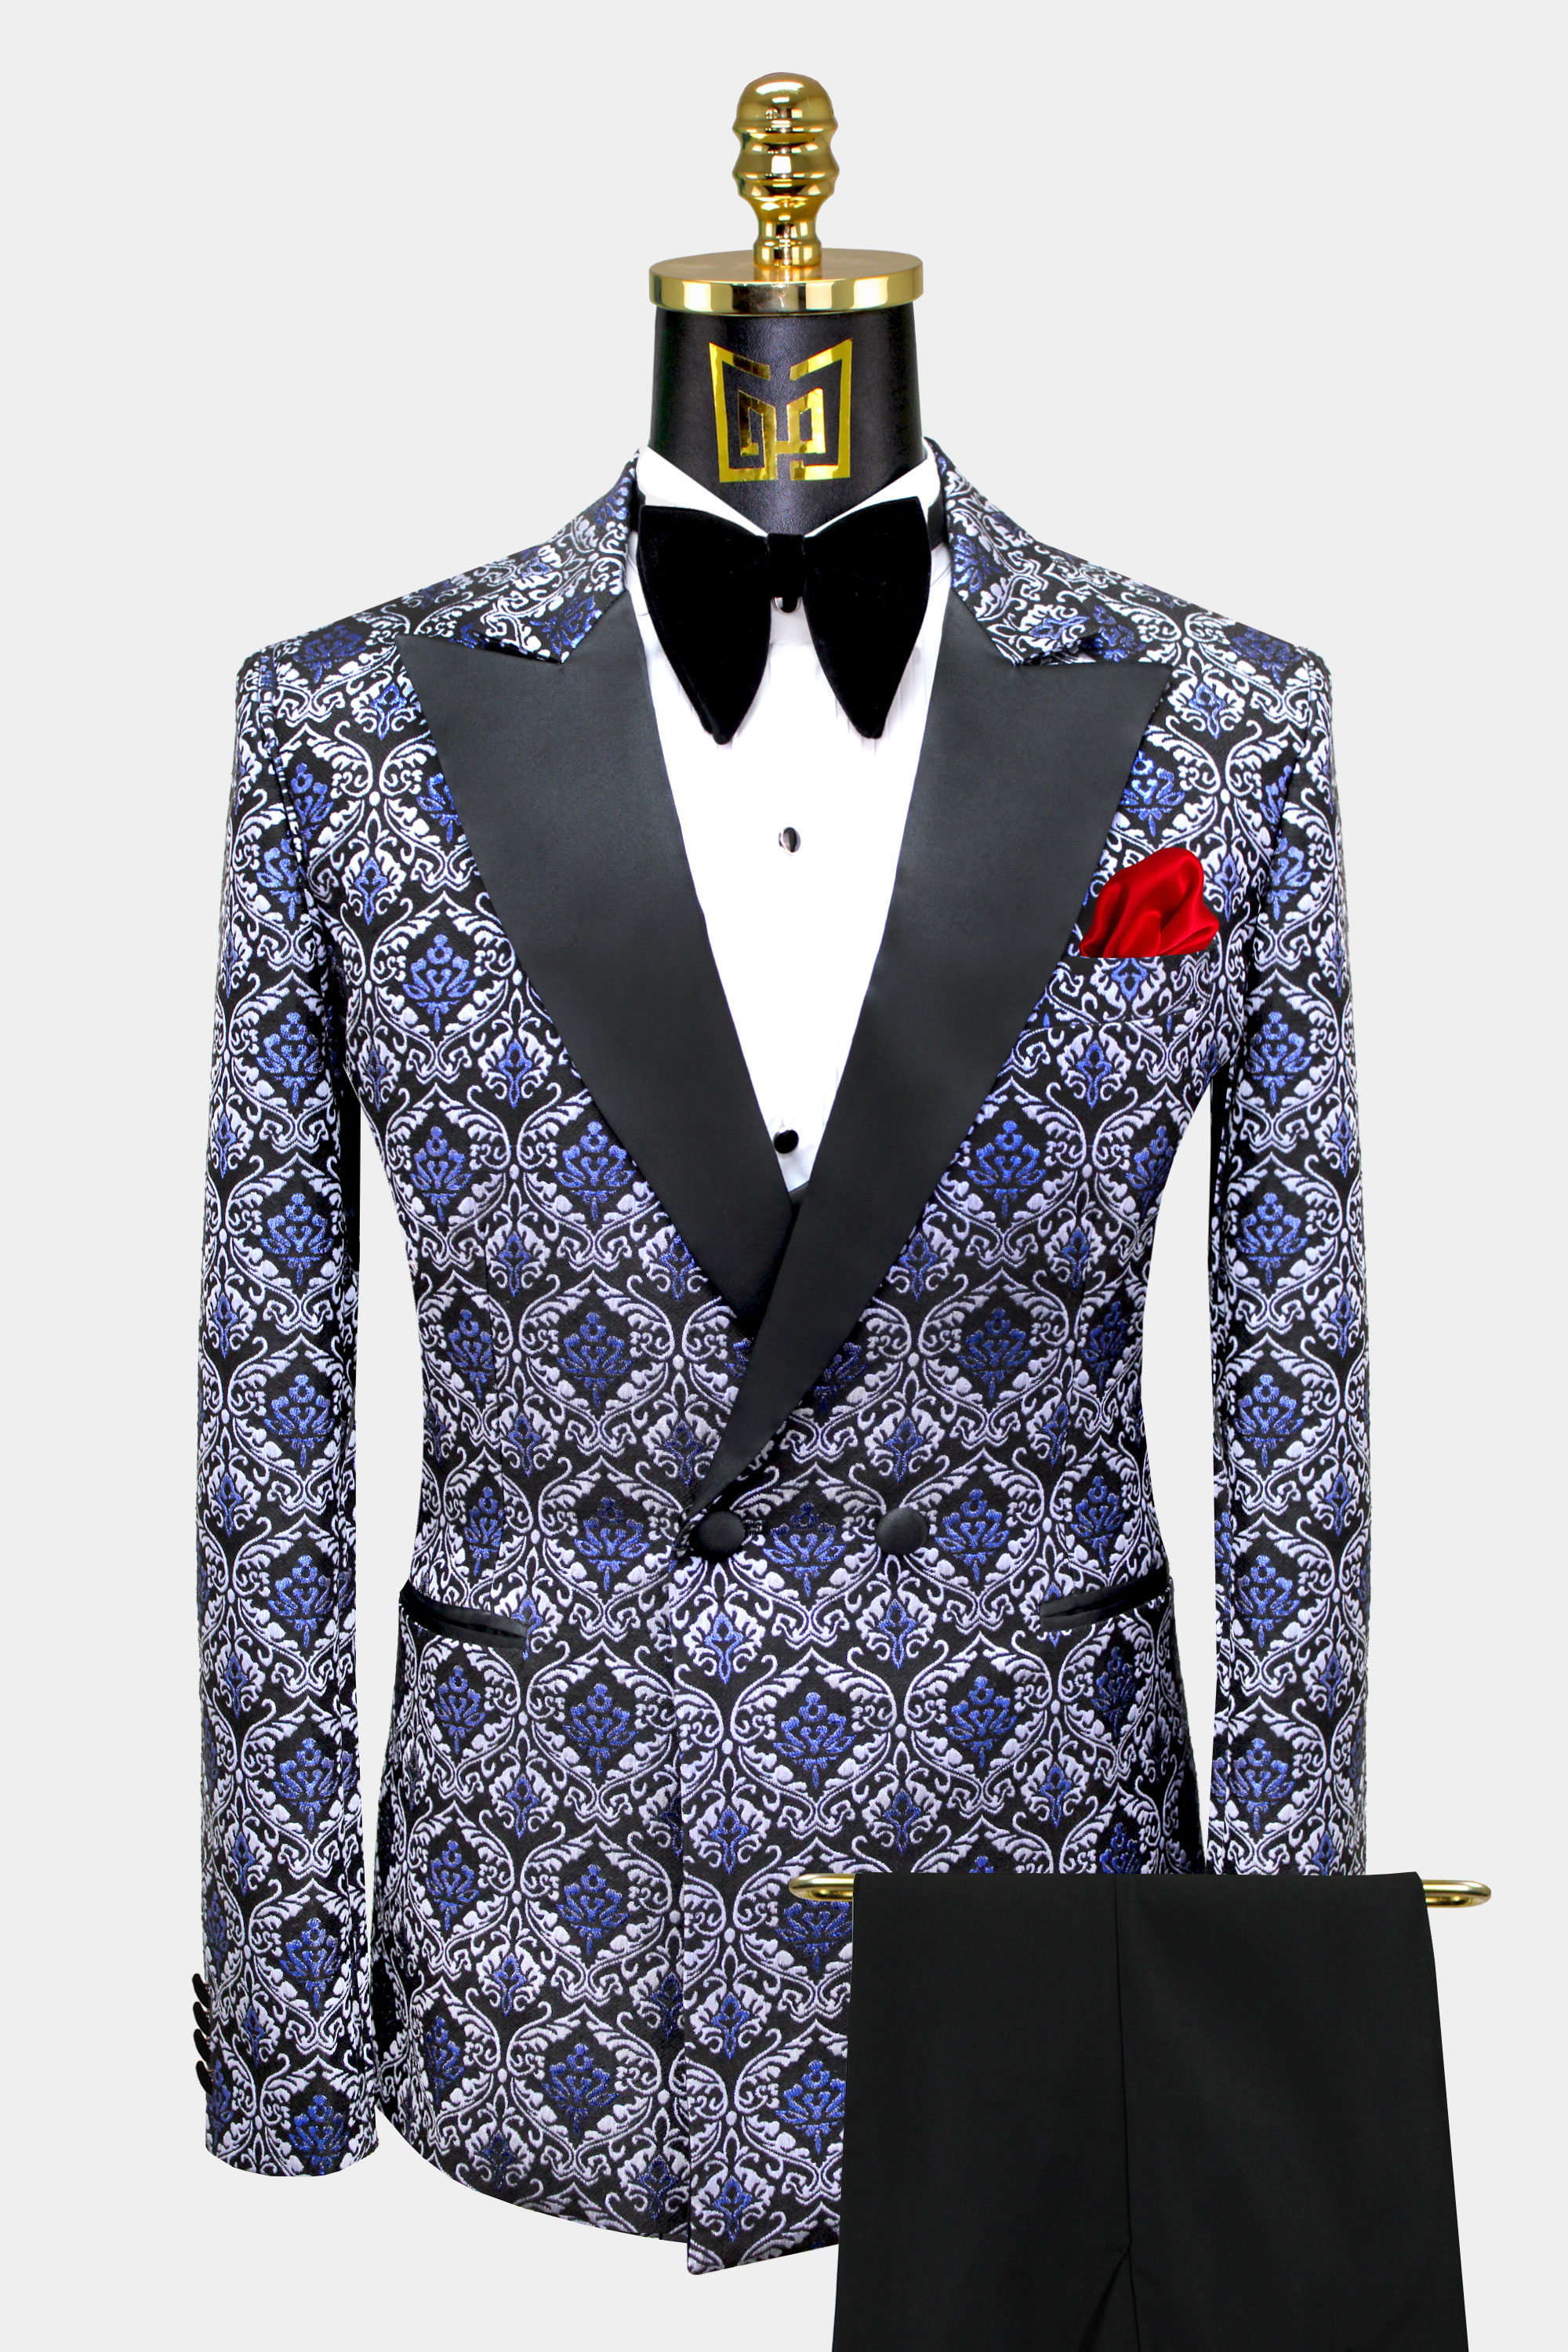 Mens-Vintage-Blue-Tuxedo-Suit-from-Gentlemansguru.com